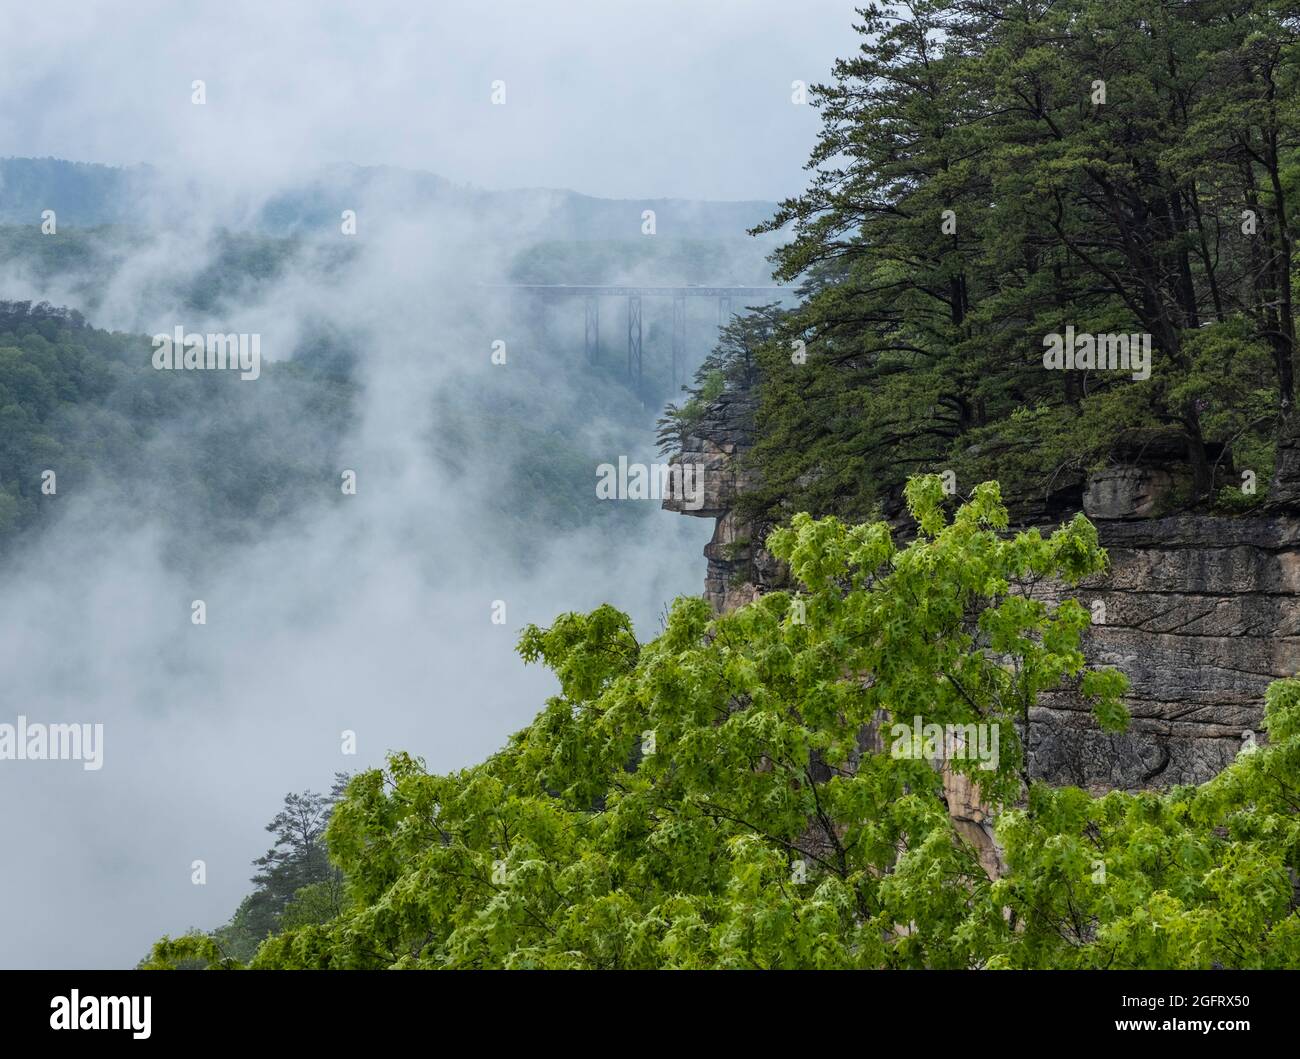 Parque Nacional New River Gorge, Virginia Occidental. Vista del puente New River Gorge a través de la niebla en un día lluvioso desde el sendero Endless Wall Trail. Foto de stock